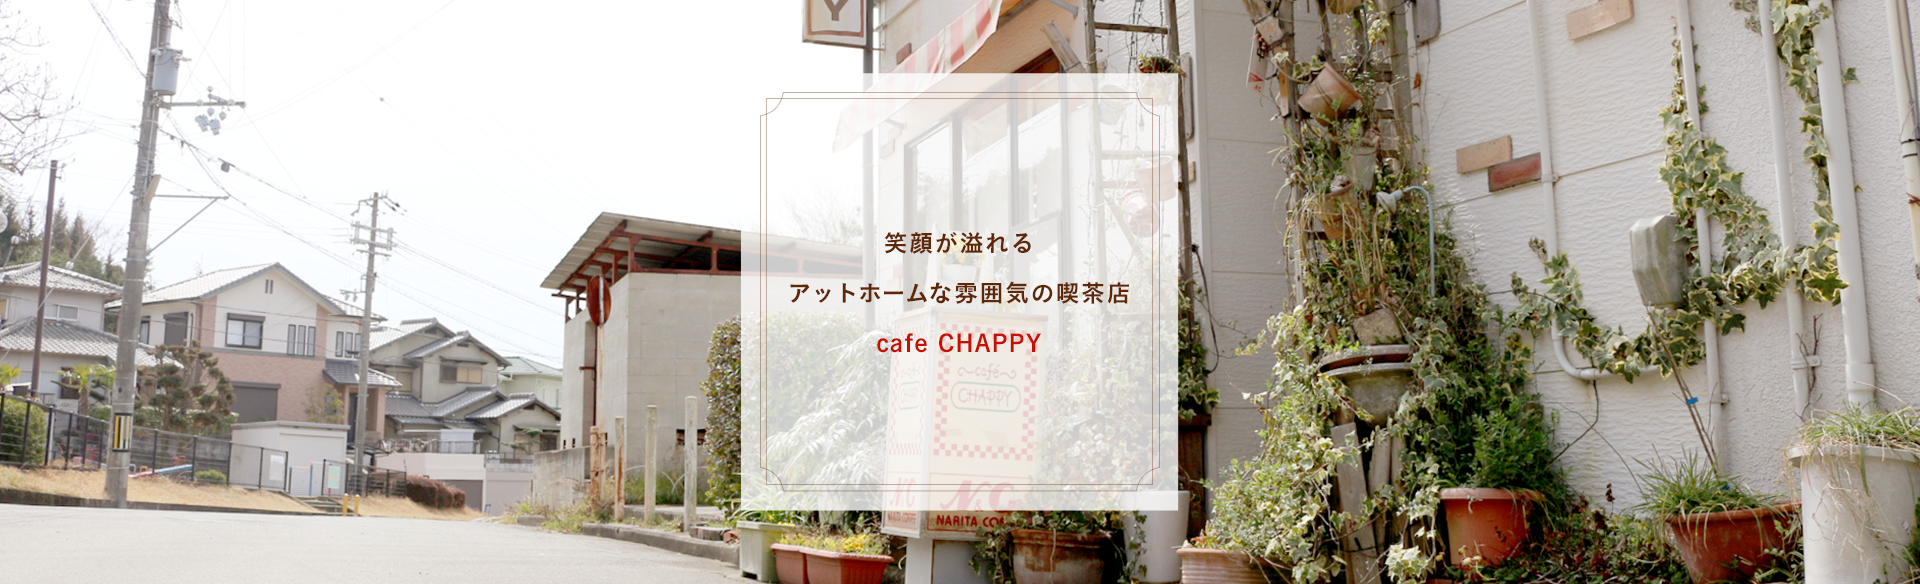 笑顔が溢れるアットホームな雰囲気の喫茶店 cafe CHAPPY